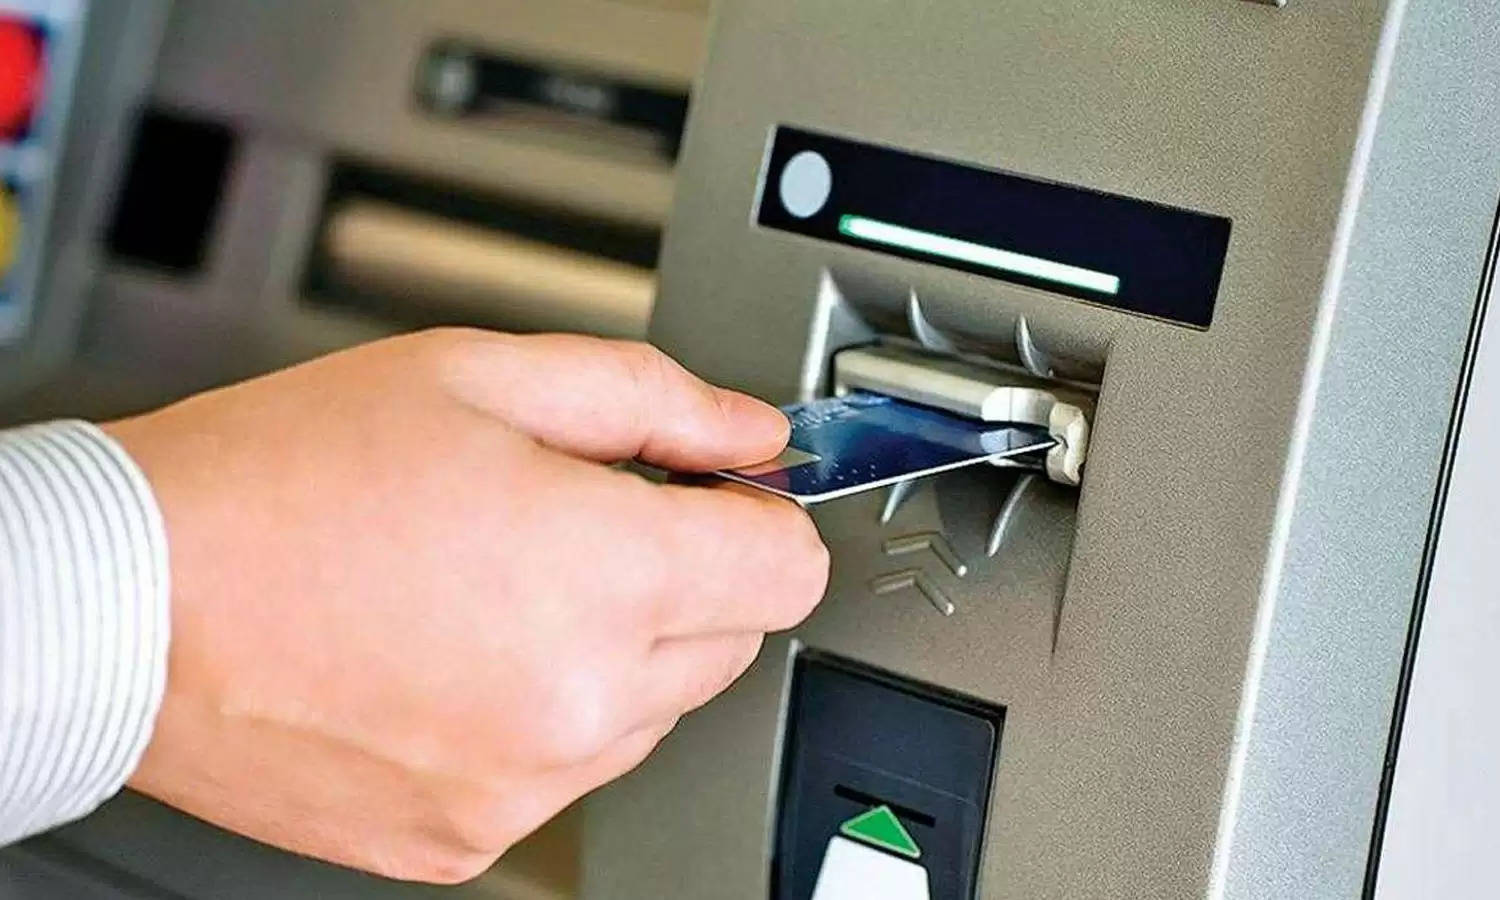 खुशखबरी! अगर ATM कार्ड इस्तेमाल करते हैं, तो दिए जाएंगे 5 लाख रुपये, फटाफट जानें कैसे और उठाएं फायदा